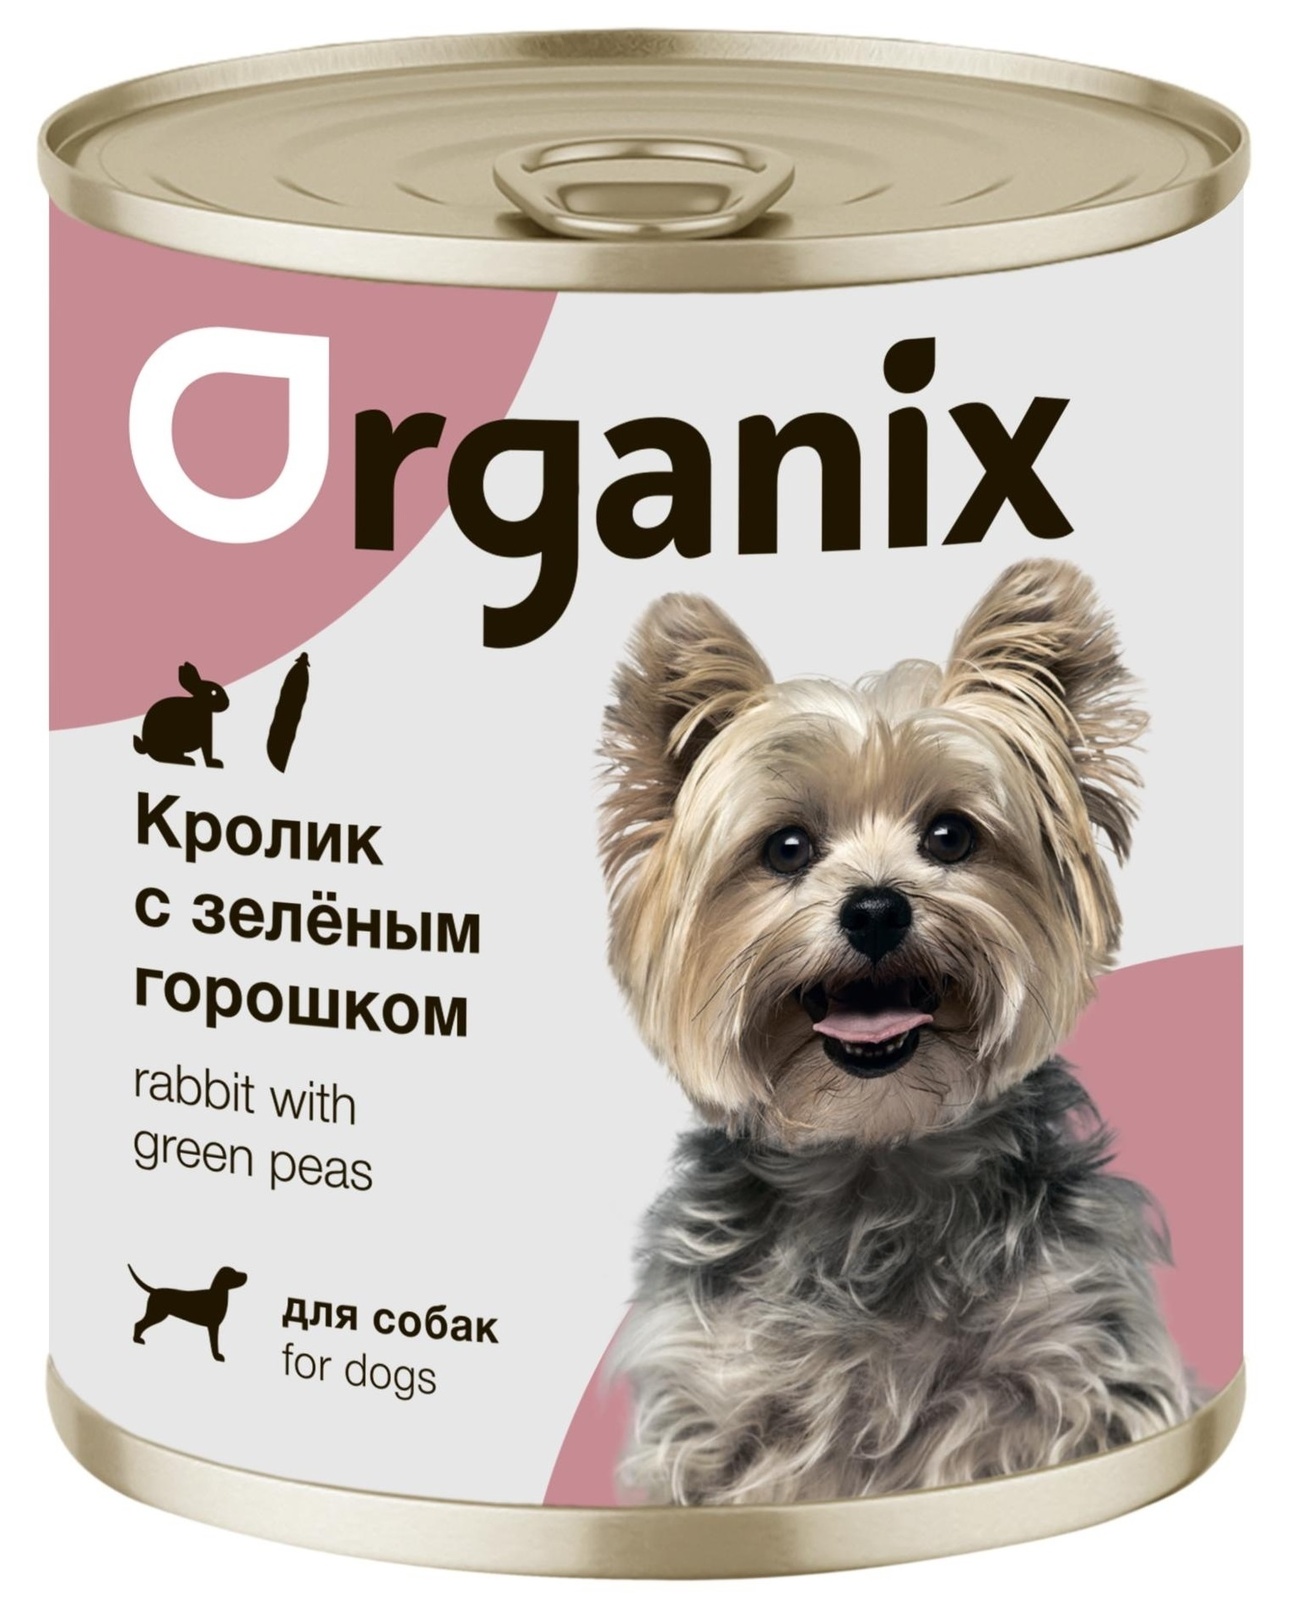 Organix консервы Organix консервы для собак Кролик с зеленым горошком (100 г) organix консервы organix монобелковые премиум консервы для собак с уткой 100 г